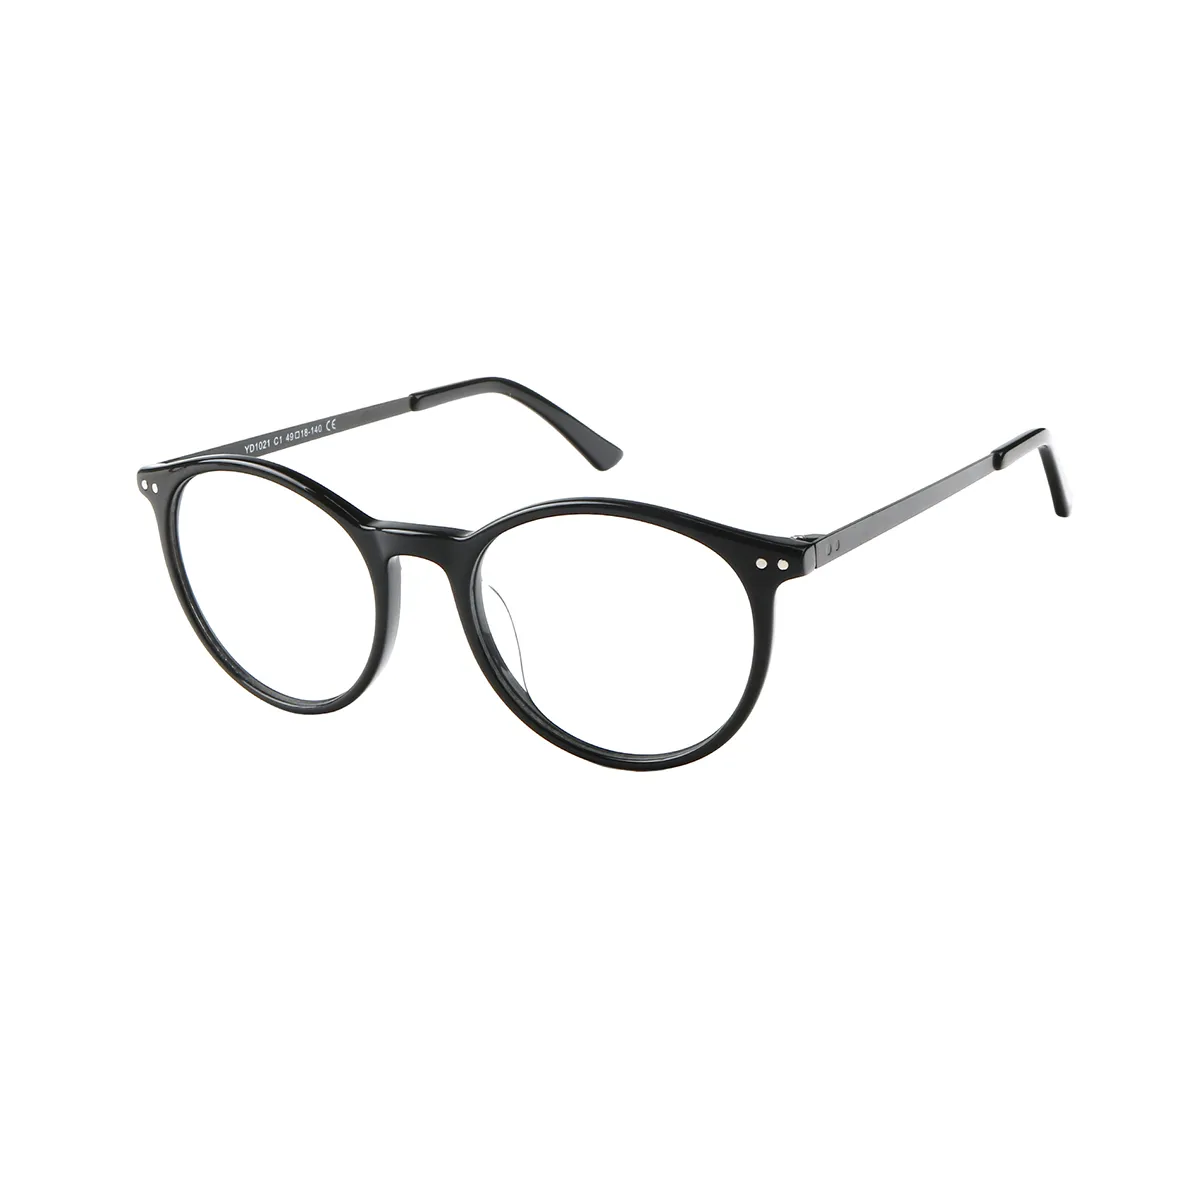 Fashion Oval Demi Eyeglasses for Women & Men